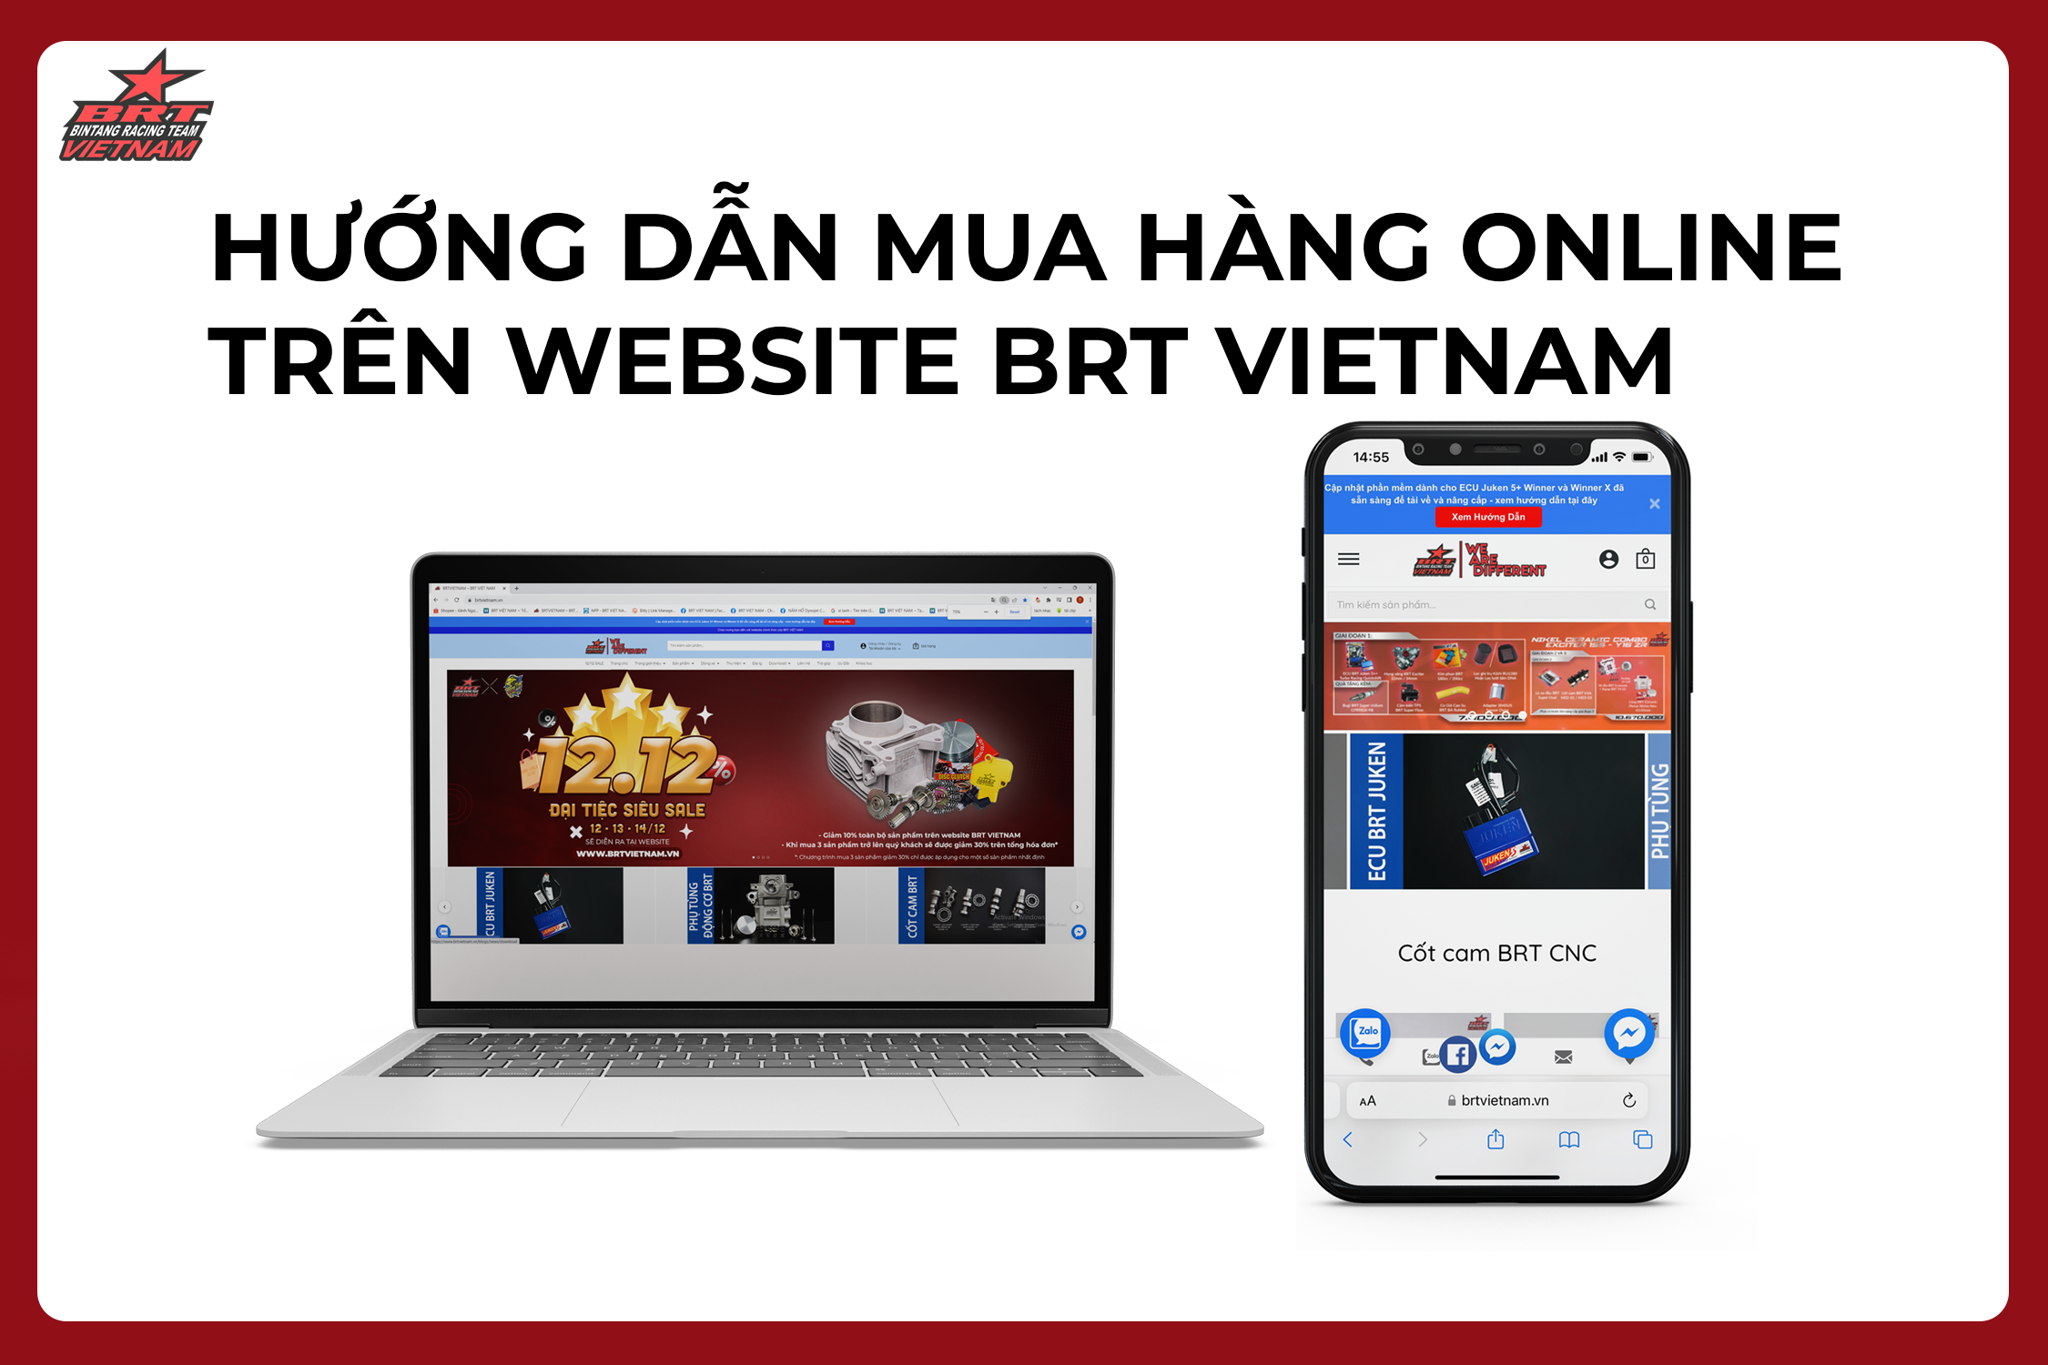 HƯỚNG DẪN MUA HÀNG TRÊN WEBSITE BRT VIETNAM